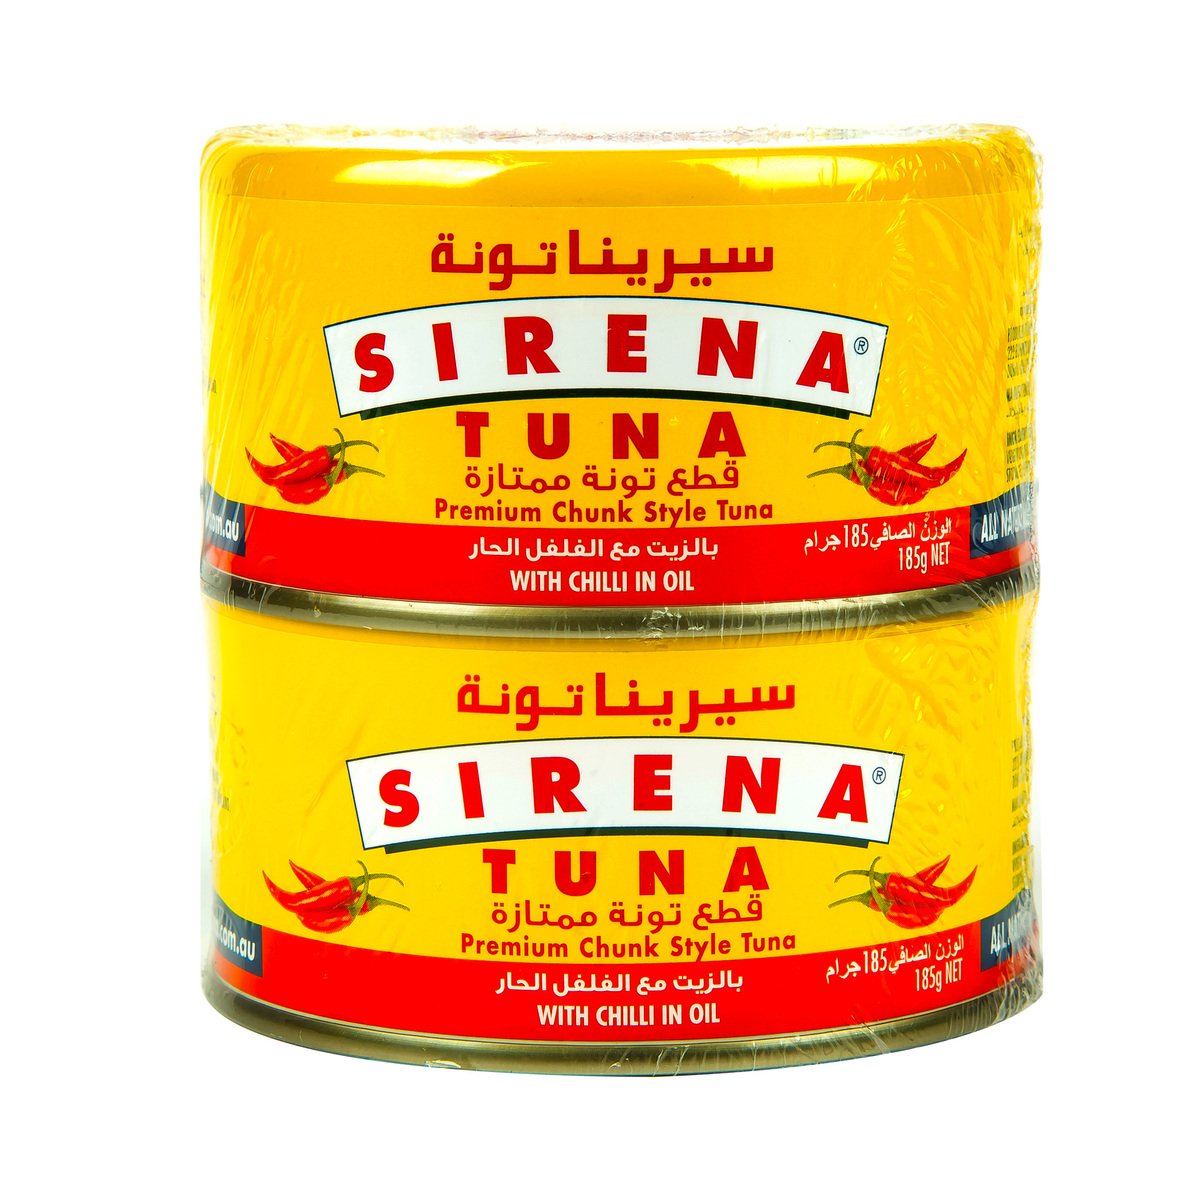 Sirena Premium Chunk Style Tuna With Chilli In Oil 2 x 185 g